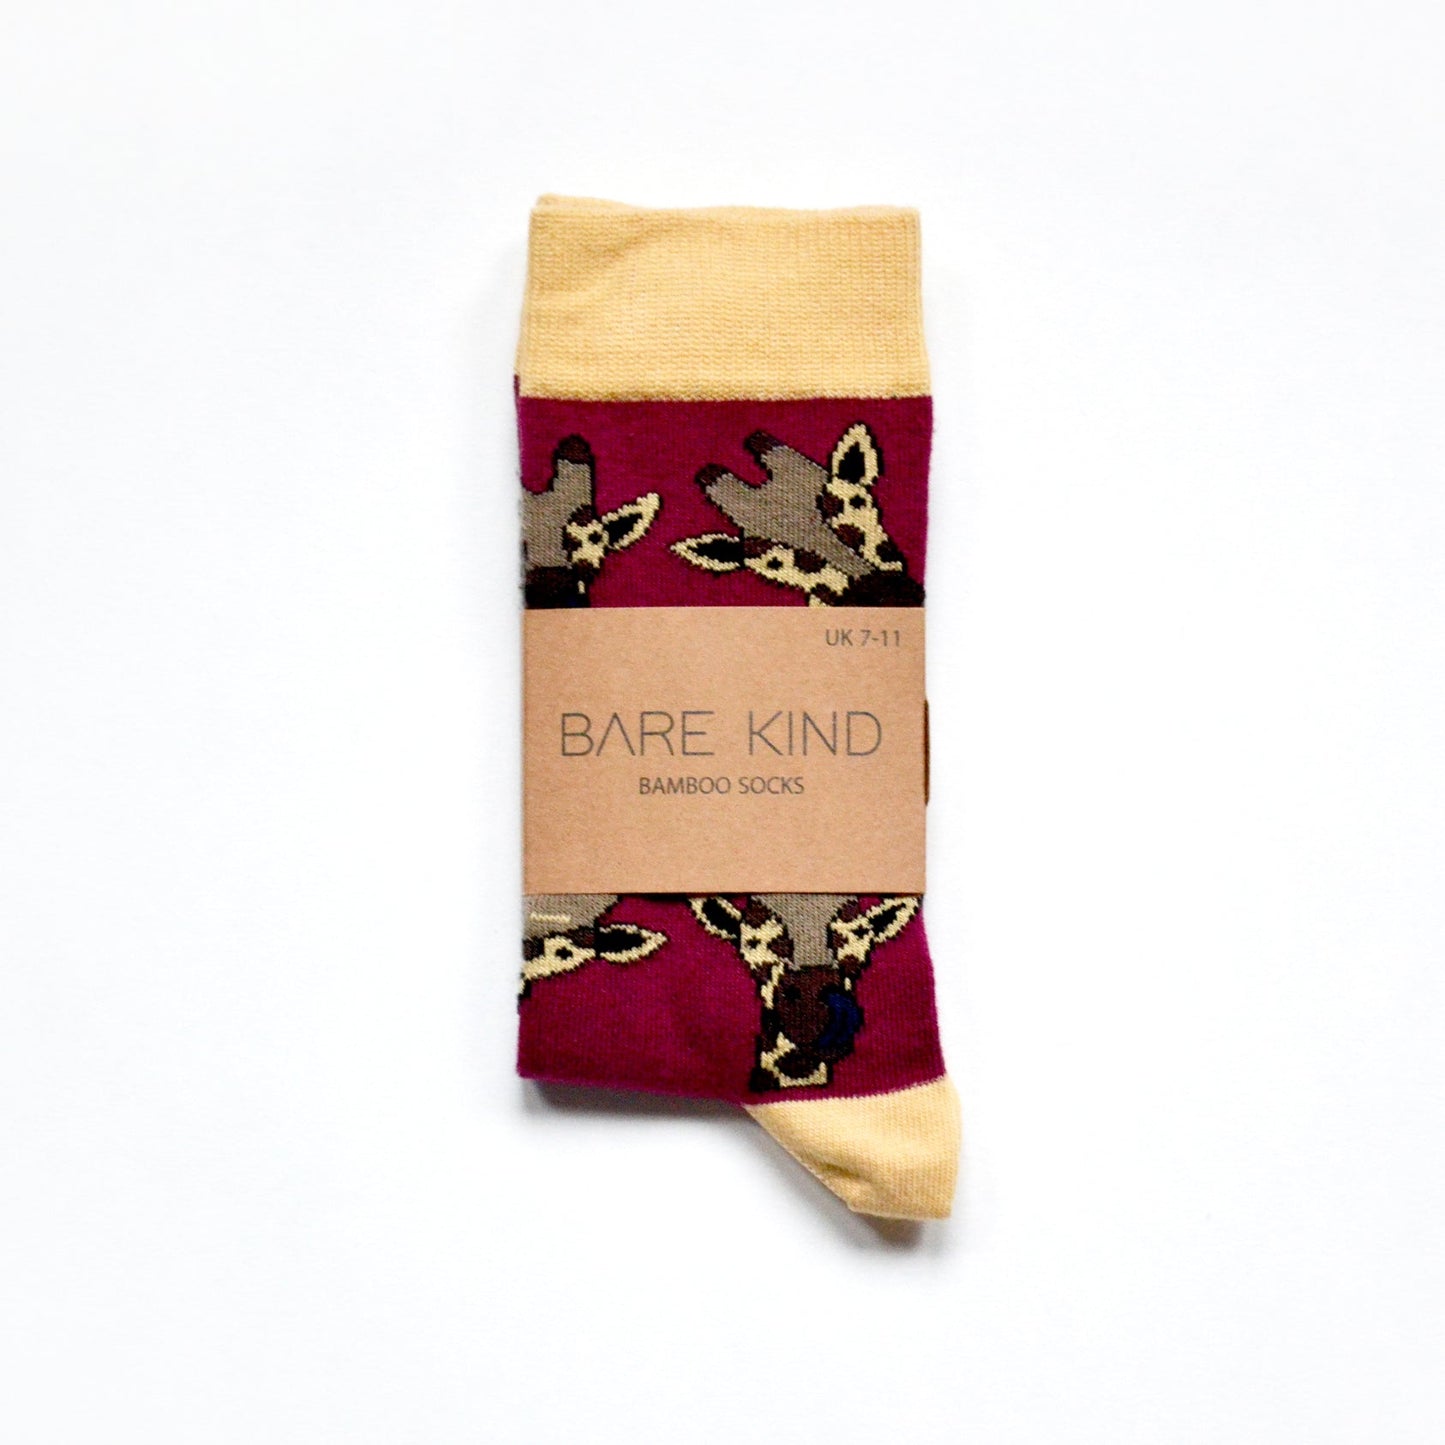 Bare Kind Bamboo Socks - Save the Giraffes